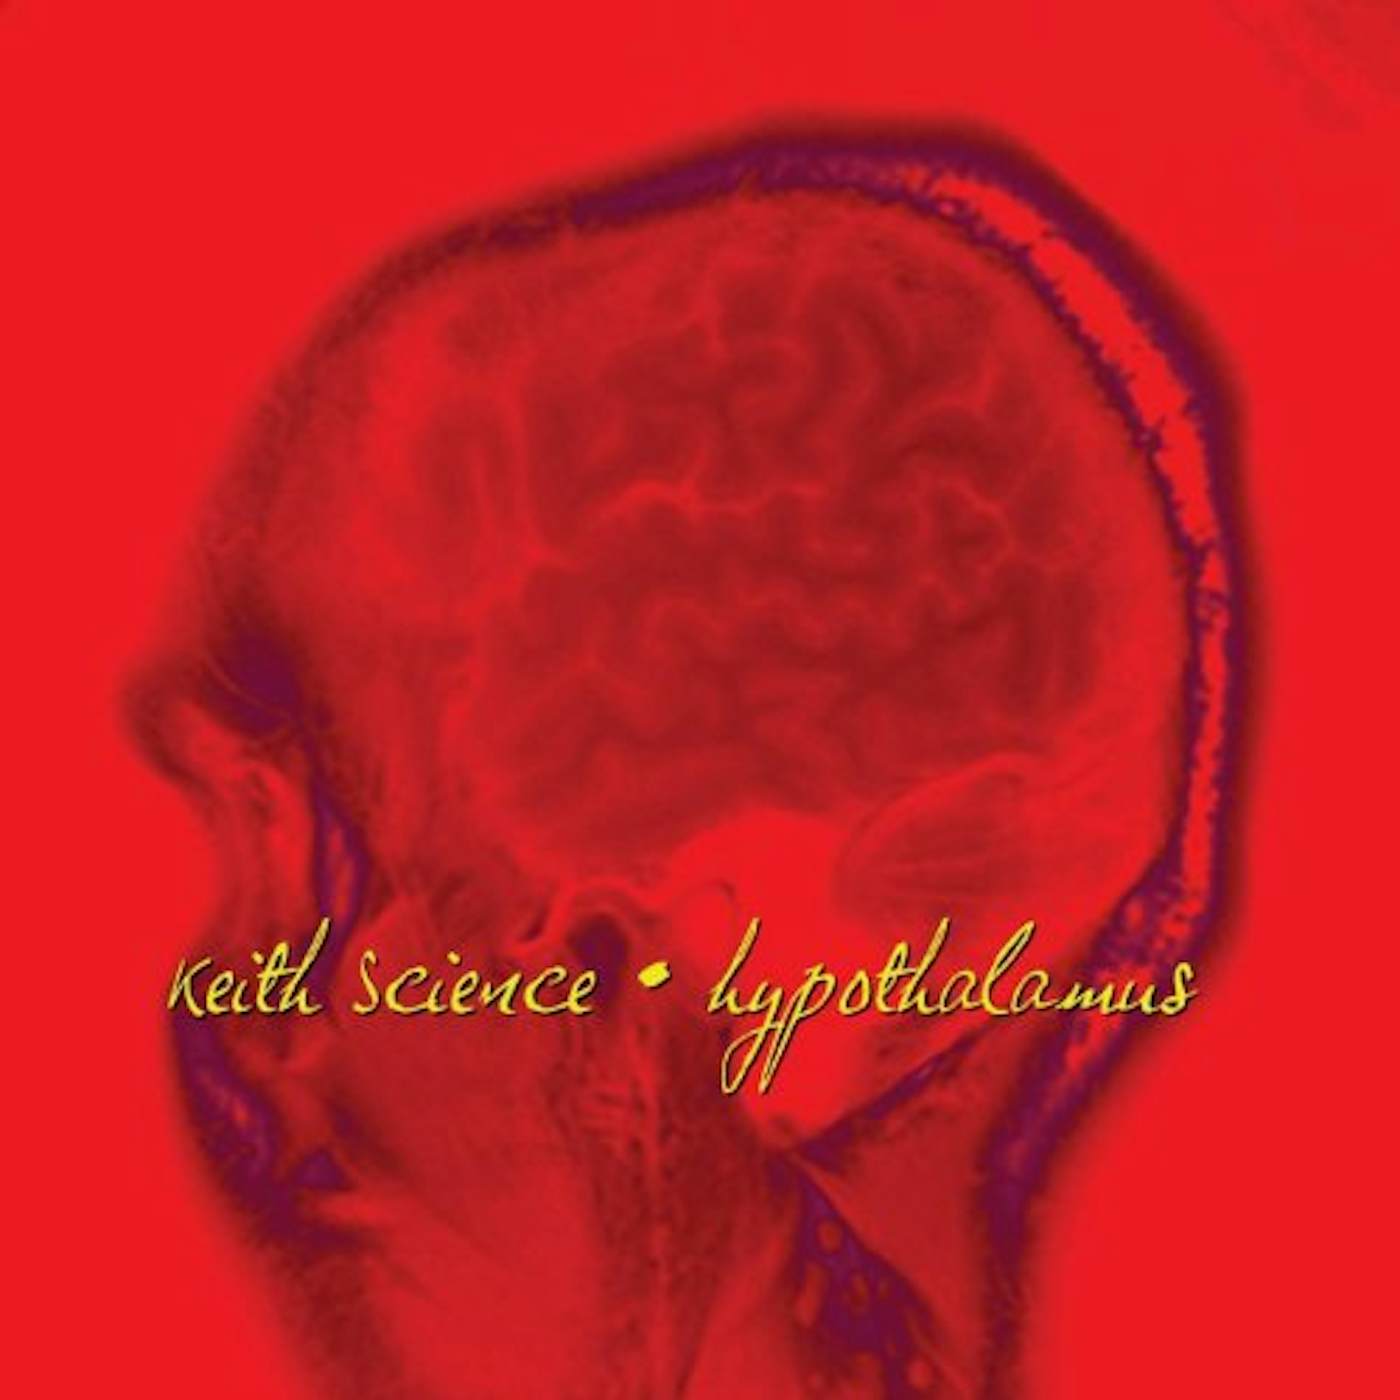 Keith Science Hypothalamus Vinyl Record